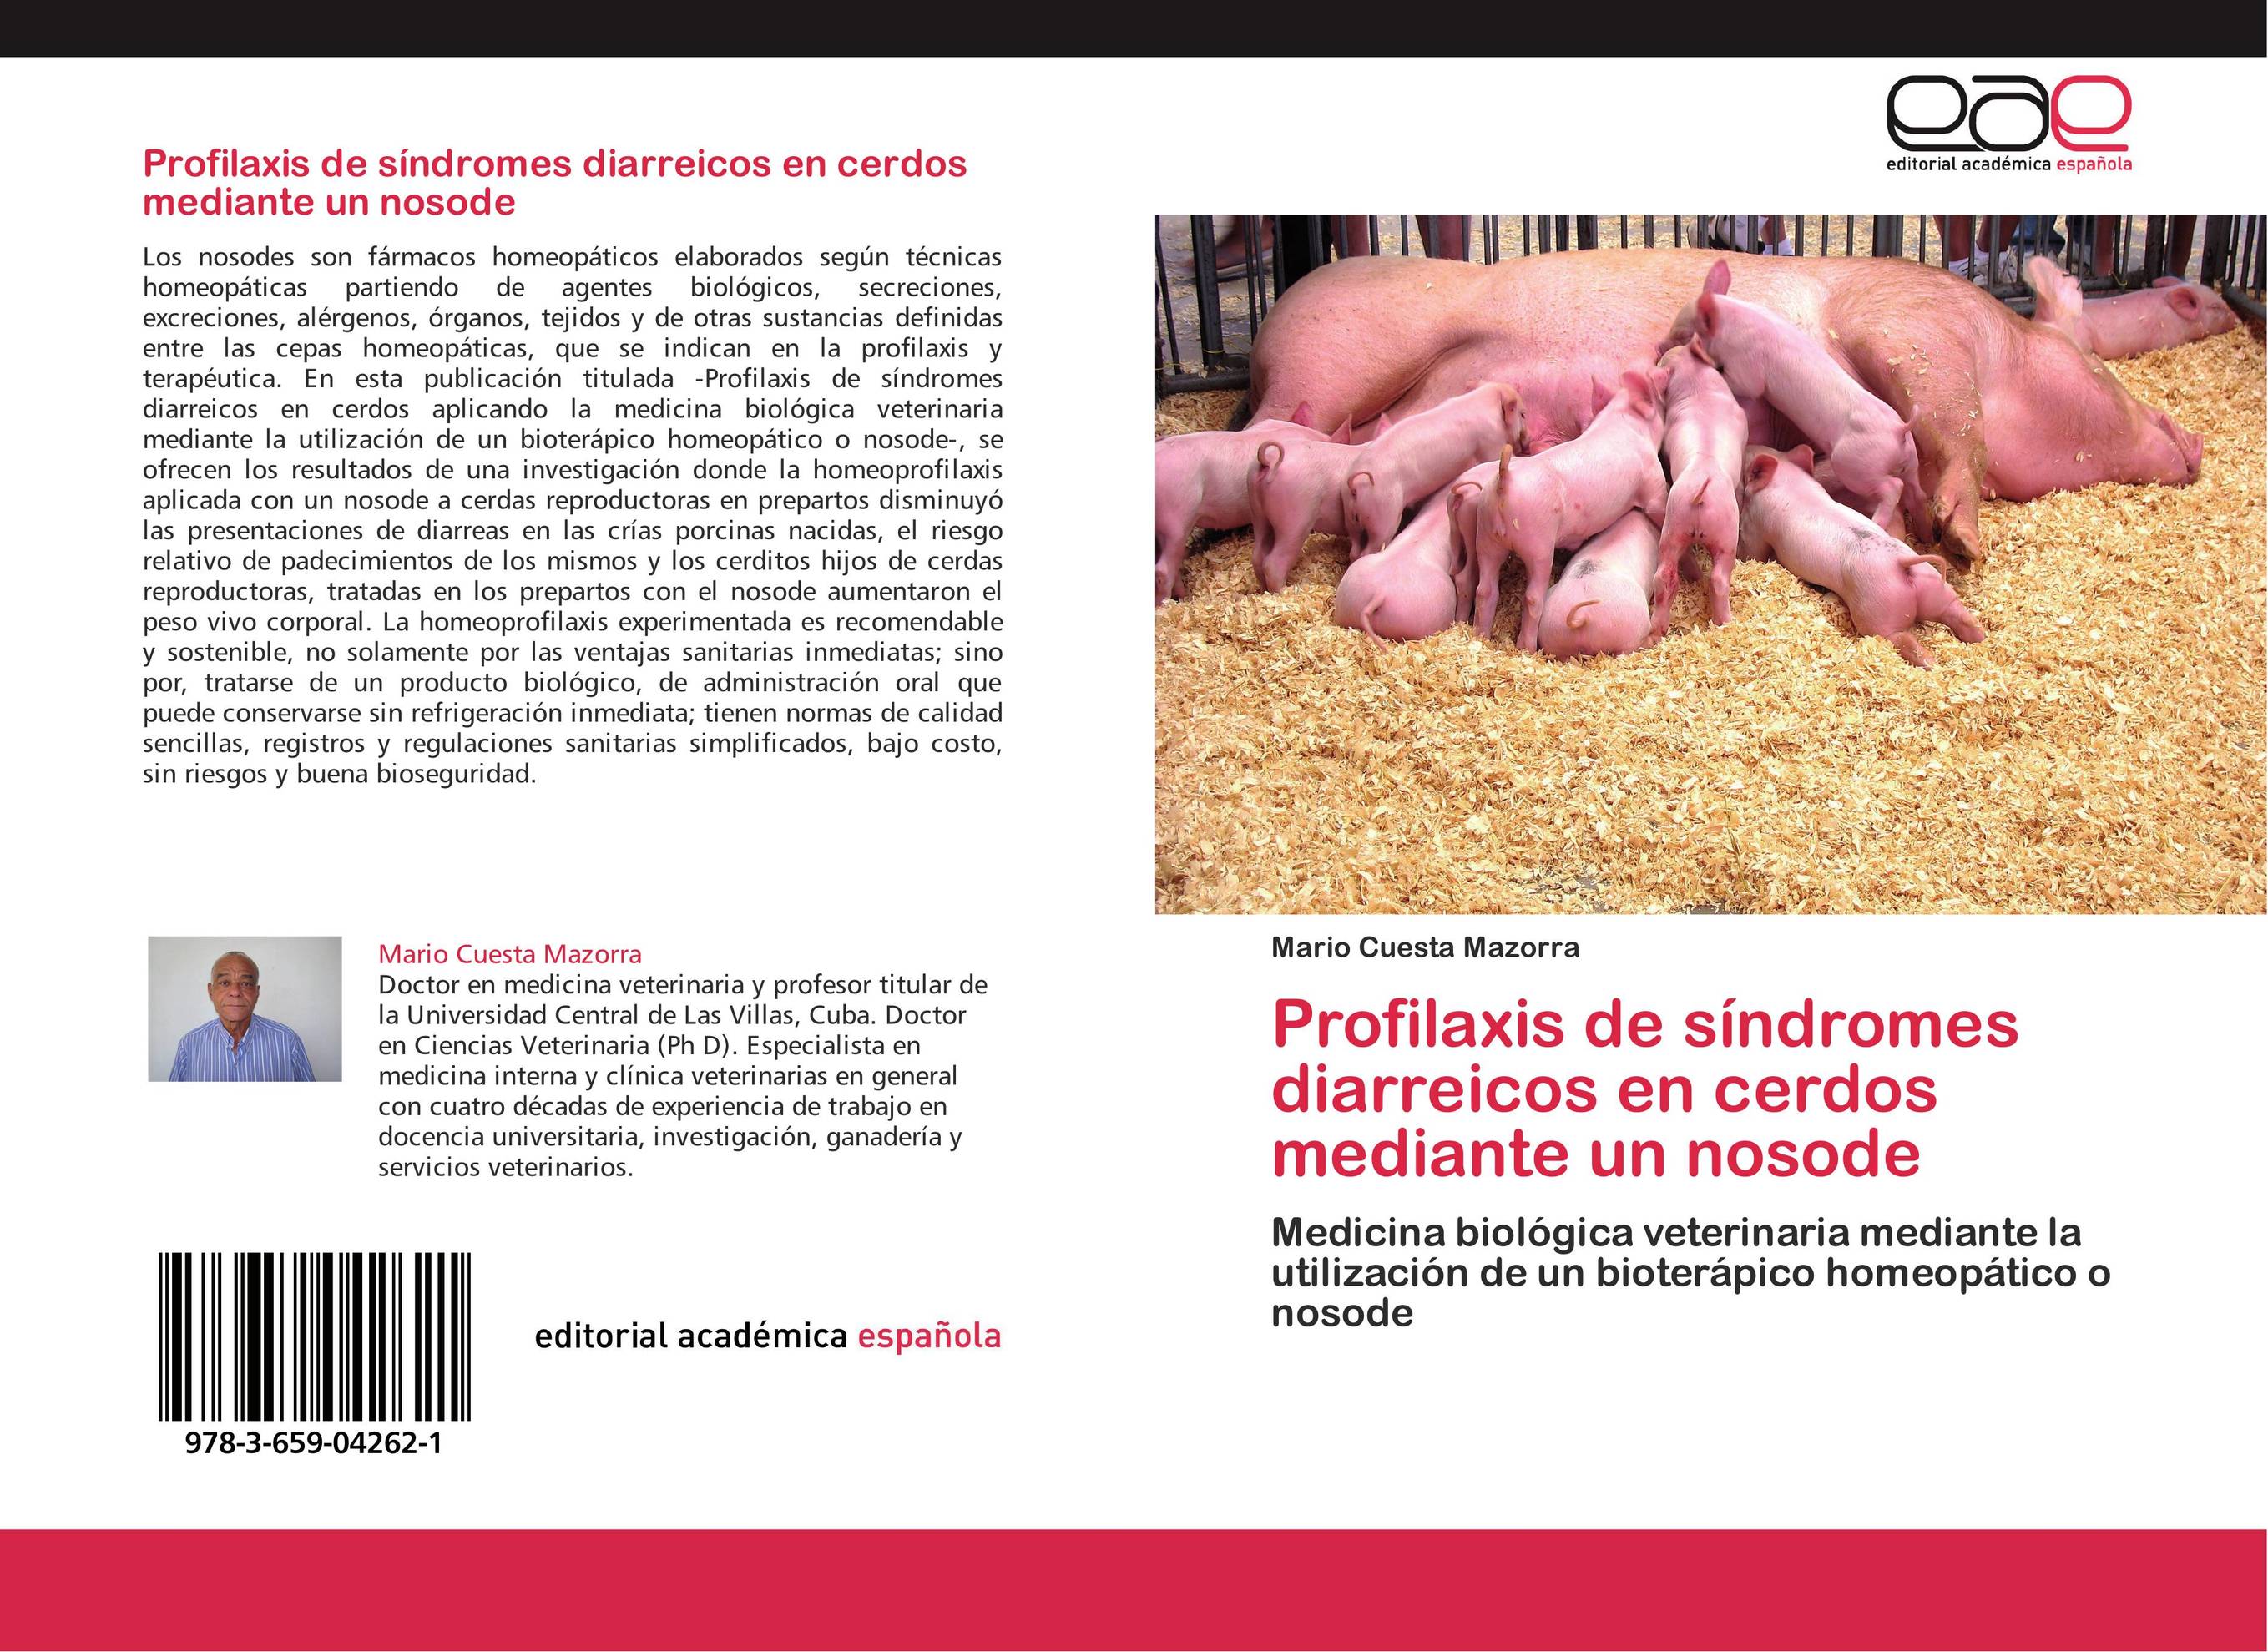 Profilaxis de síndromes diarreicos en cerdos mediante un nosode